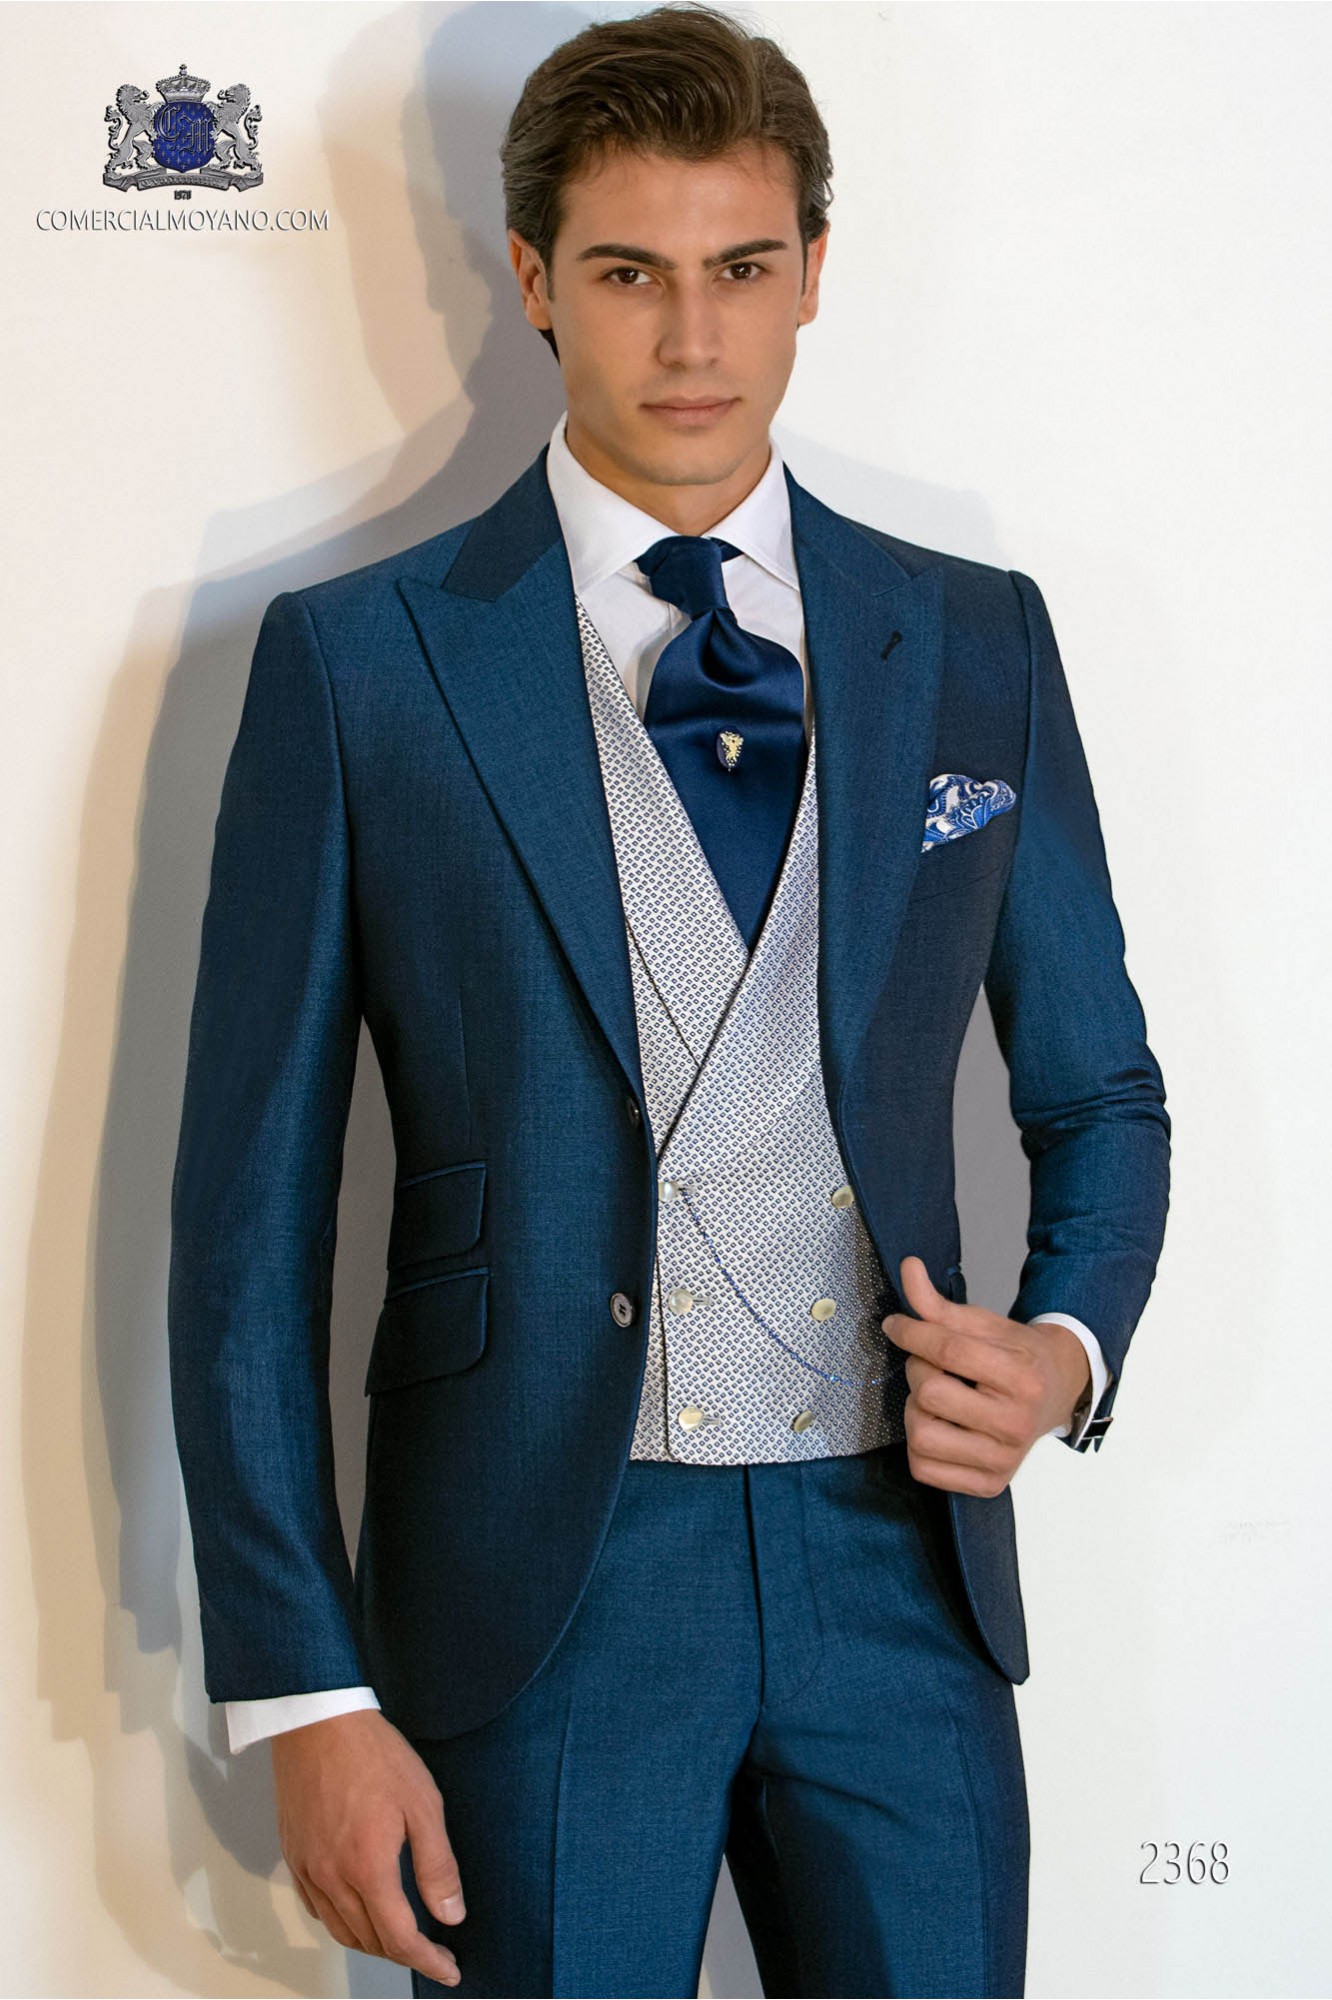 Traje de novio azul royal mixto lana mohair alpaca modelo: 2368 Mario Moyano colección Gentleman